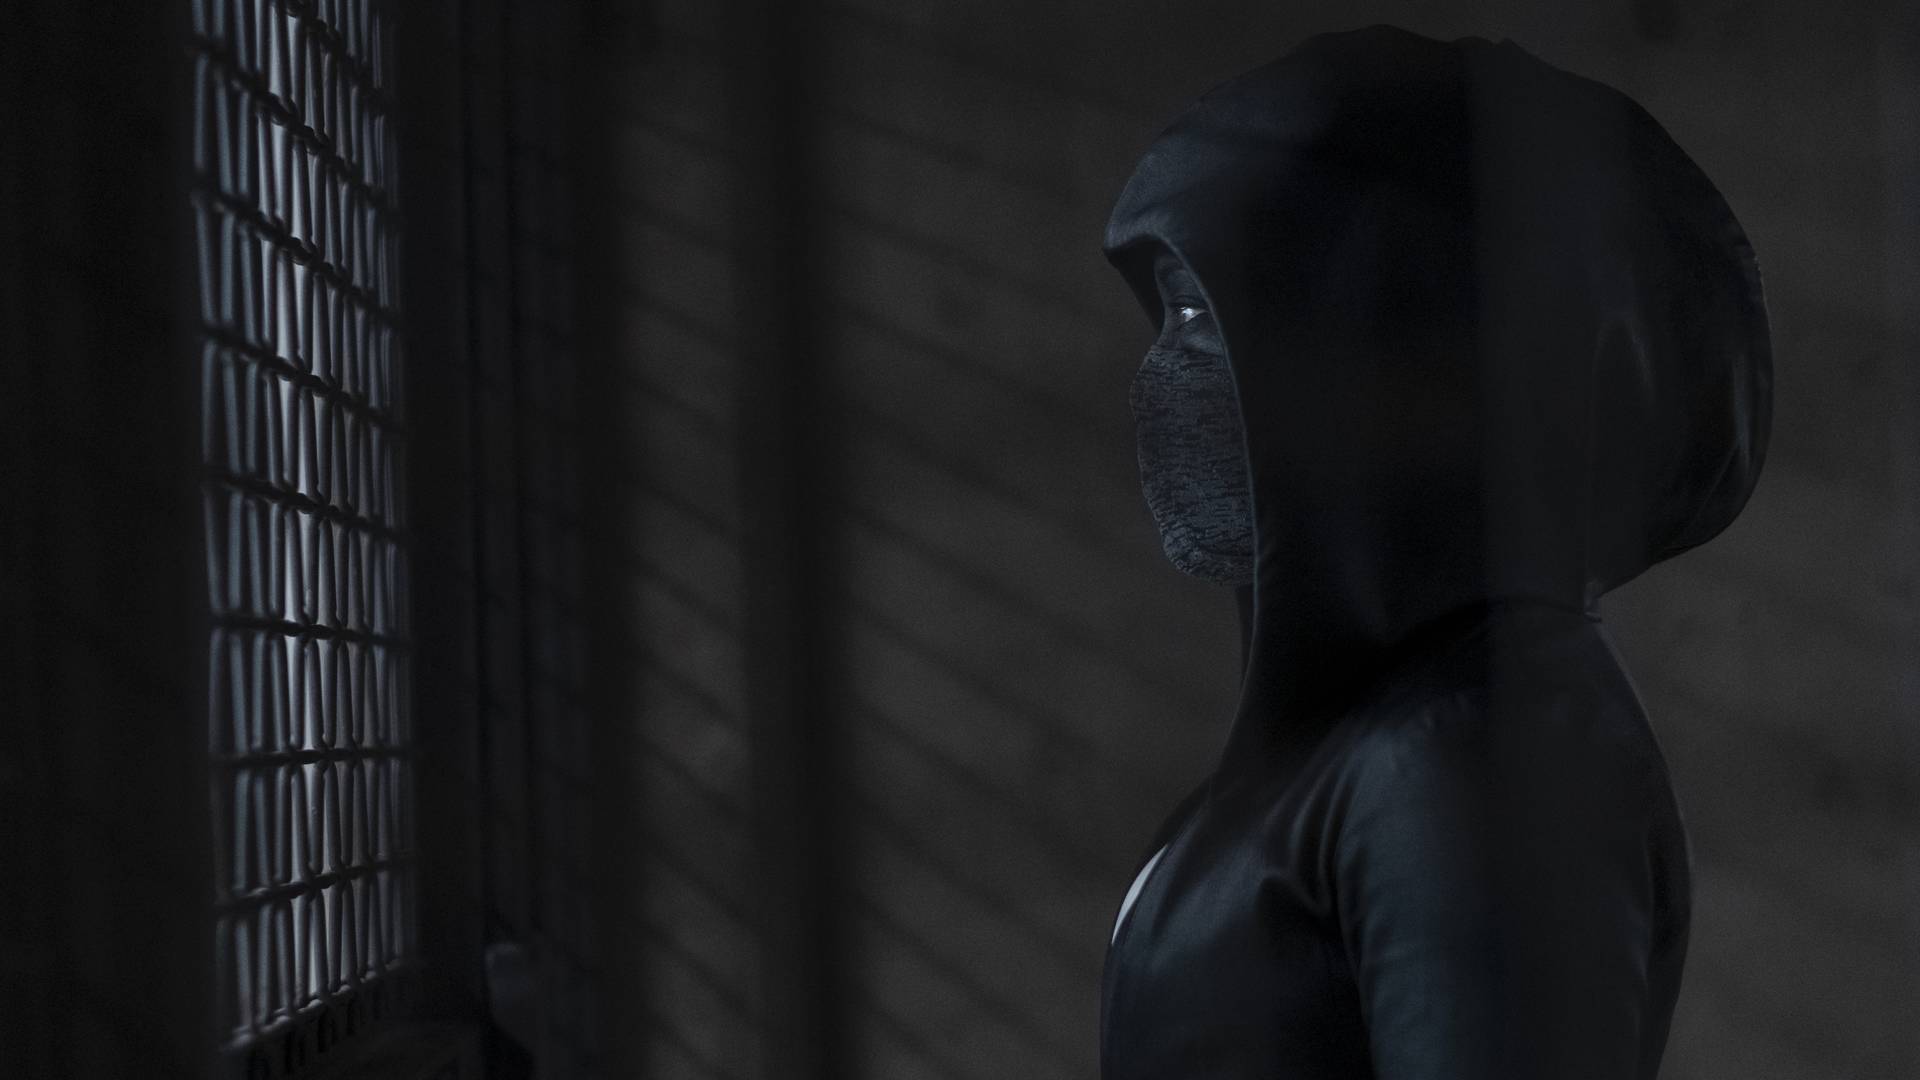 Prvi smo gledali Watchmen - najiščekivaniju seriju 2019.